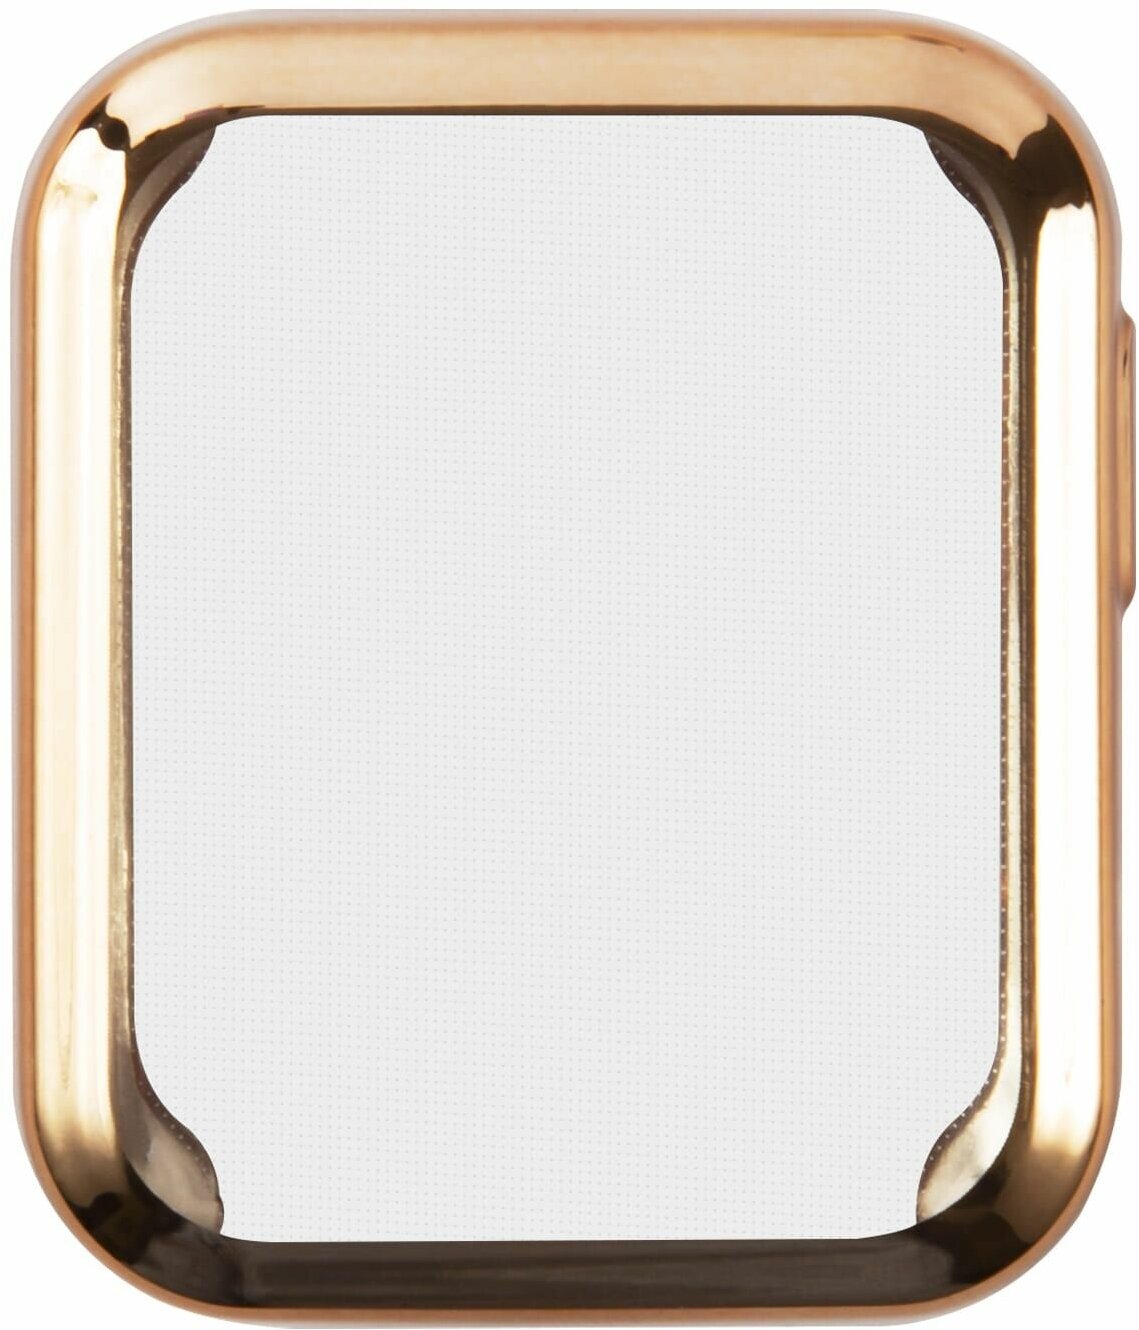 Защитное стекло с цветным бампером для Xiaomi Mi Watch Lite/Защита от царапин для смарт часов/Стекло/Защитный экран для Ксиаоми Ми вотч Лайт, золотой